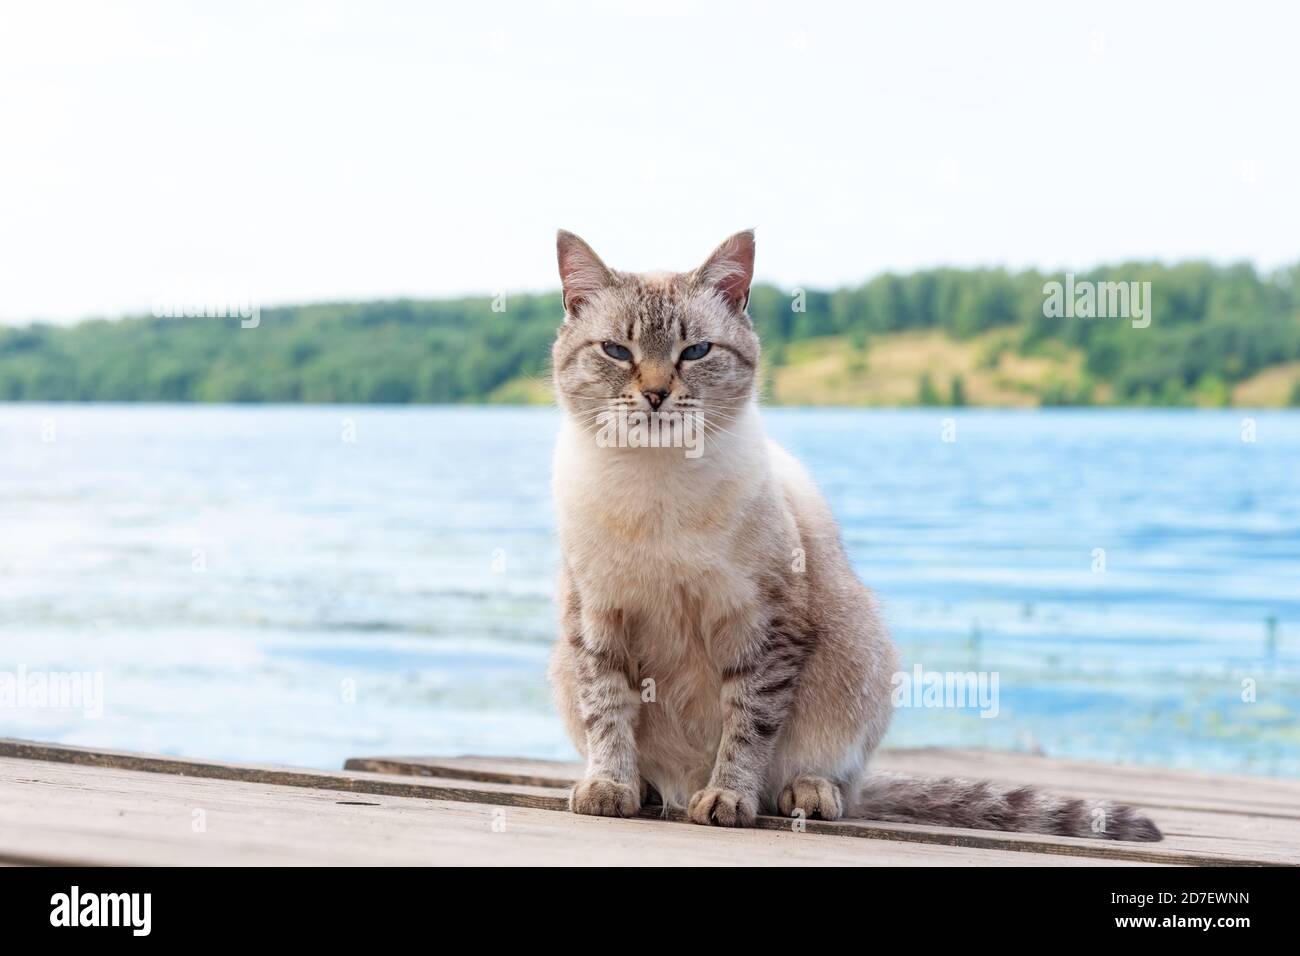 Curioso gatto morbido si siede guardando la macchina fotografica sul molo di legno Foto Stock